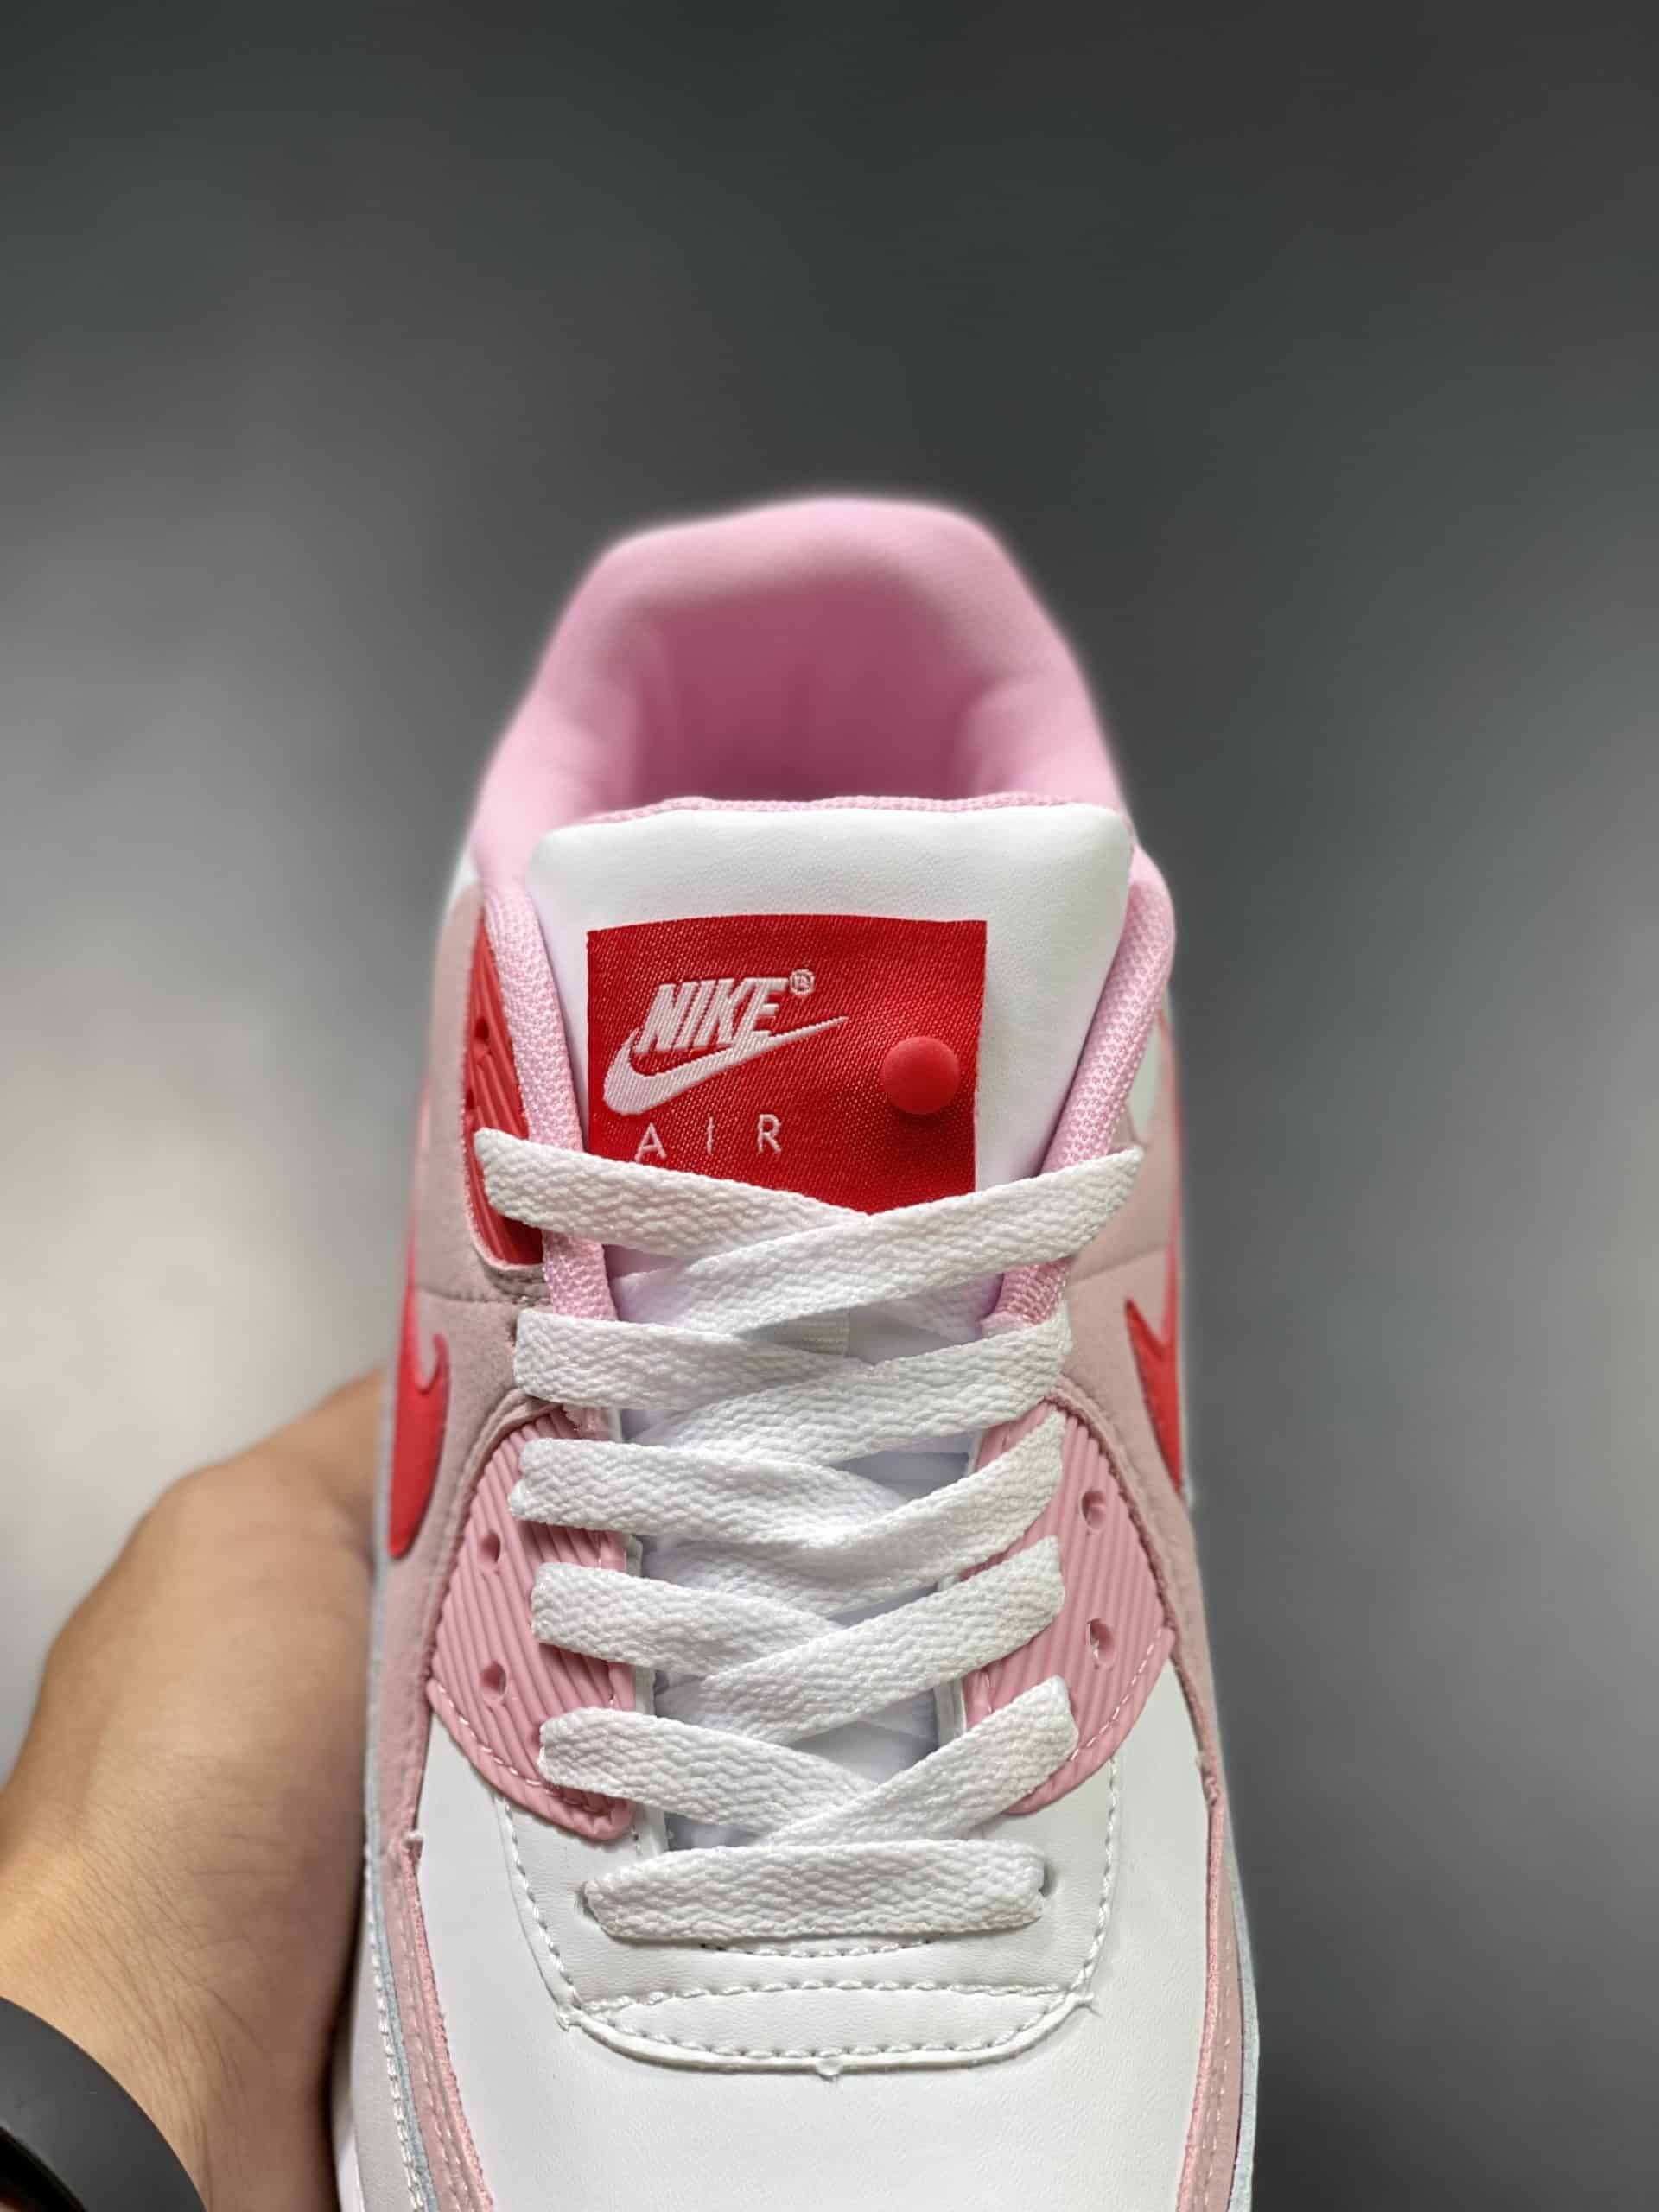 Giày Nike Air Max 90 Valentine Day Đỏ Hồng